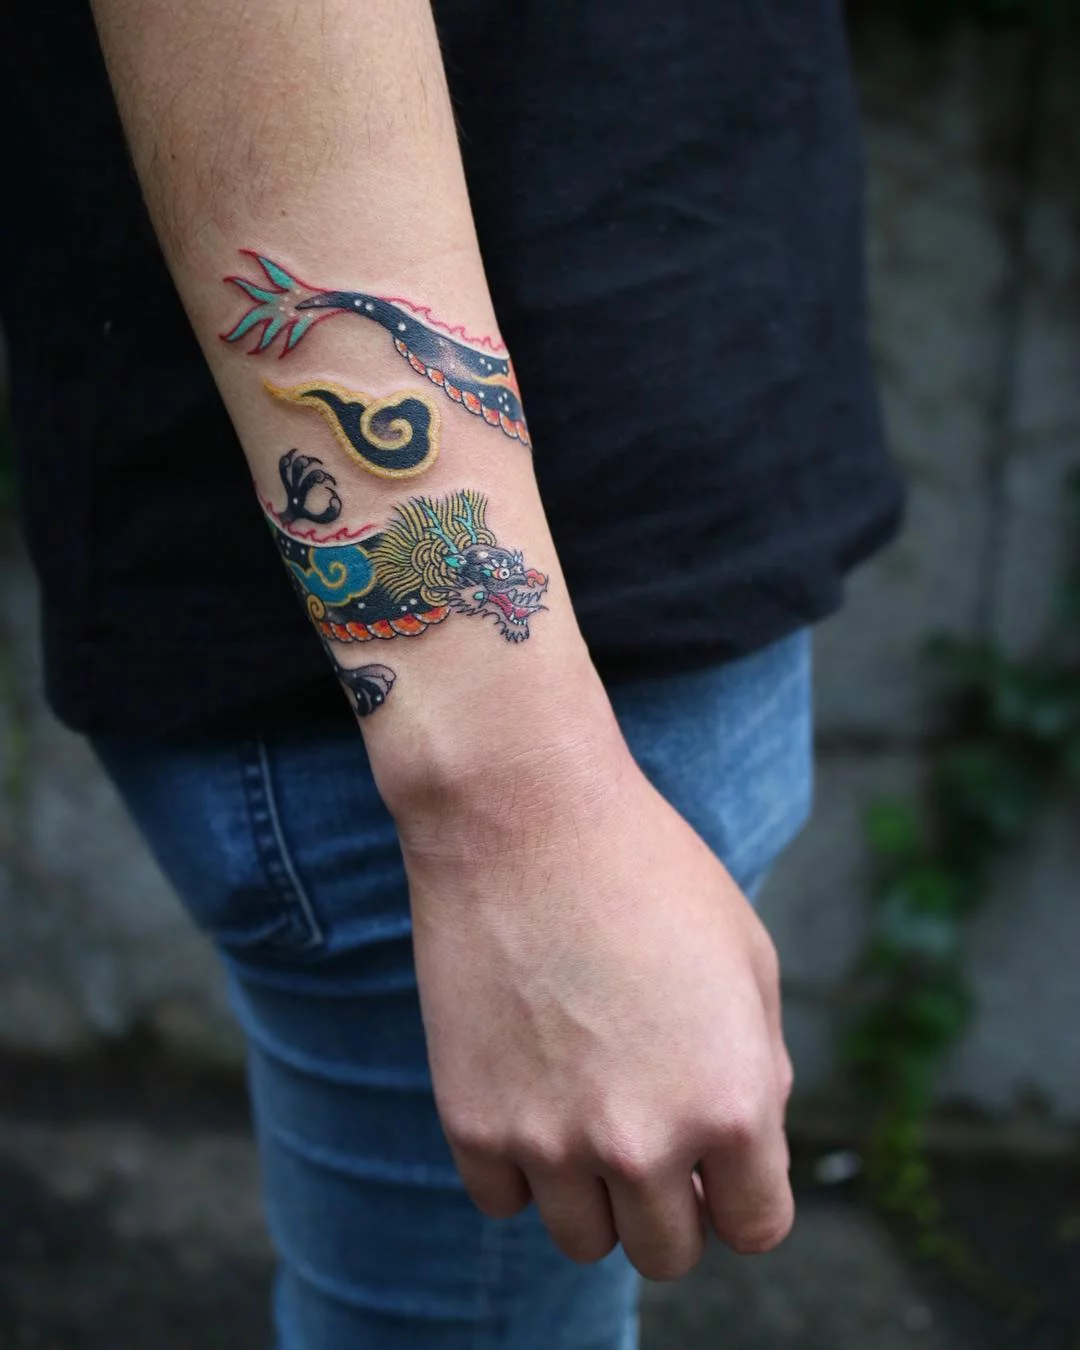 matchingtattoosdragonsleevetattooinsidearmtattoos  Dragon tattoo  Tattoos Dragon sleeve tattoos